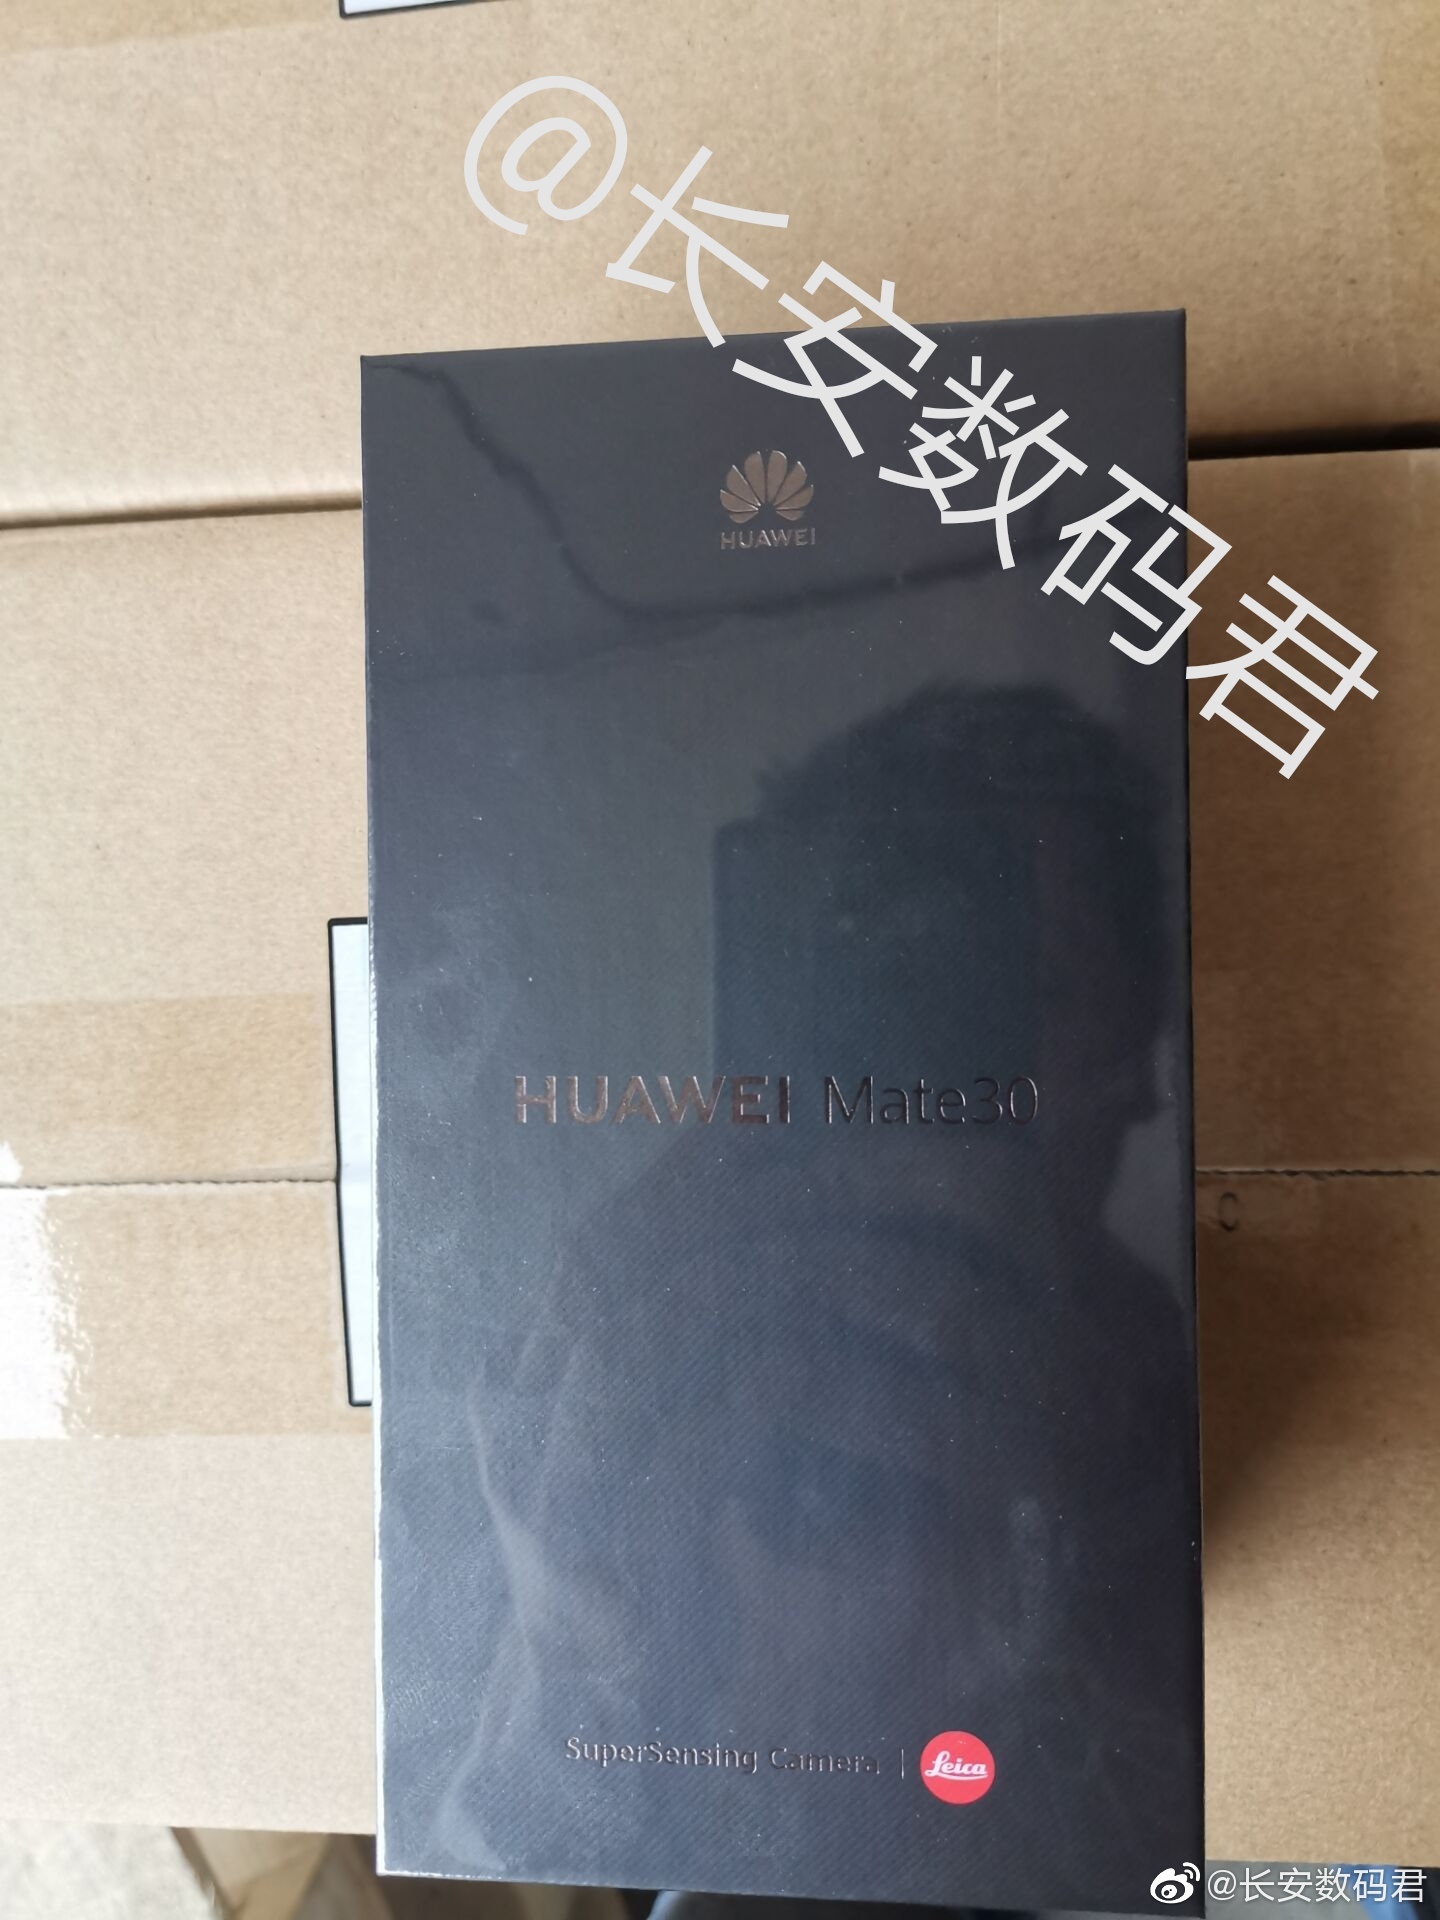 W sieci pojawiy si zdjcia opakowania Huawei Mate 30